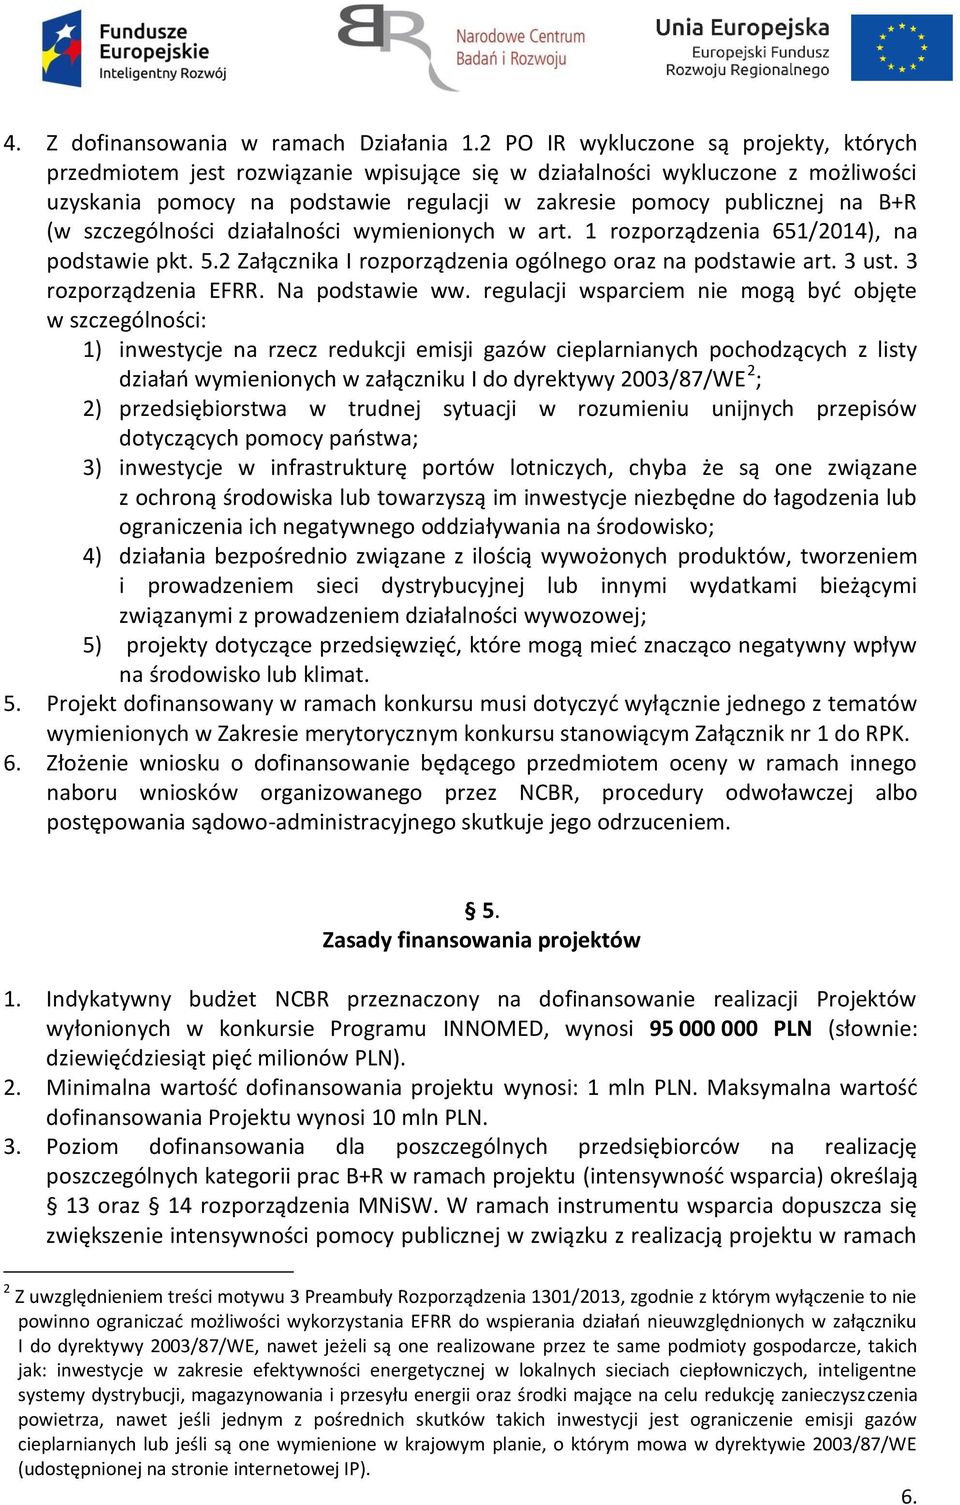 (w szczególności działalności wymienionych w art. 1 rozporządzenia 651/2014), na podstawie pkt. 5.2 Załącznika I rozporządzenia ogólnego oraz na podstawie art. 3 ust. 3 rozporządzenia EFRR.